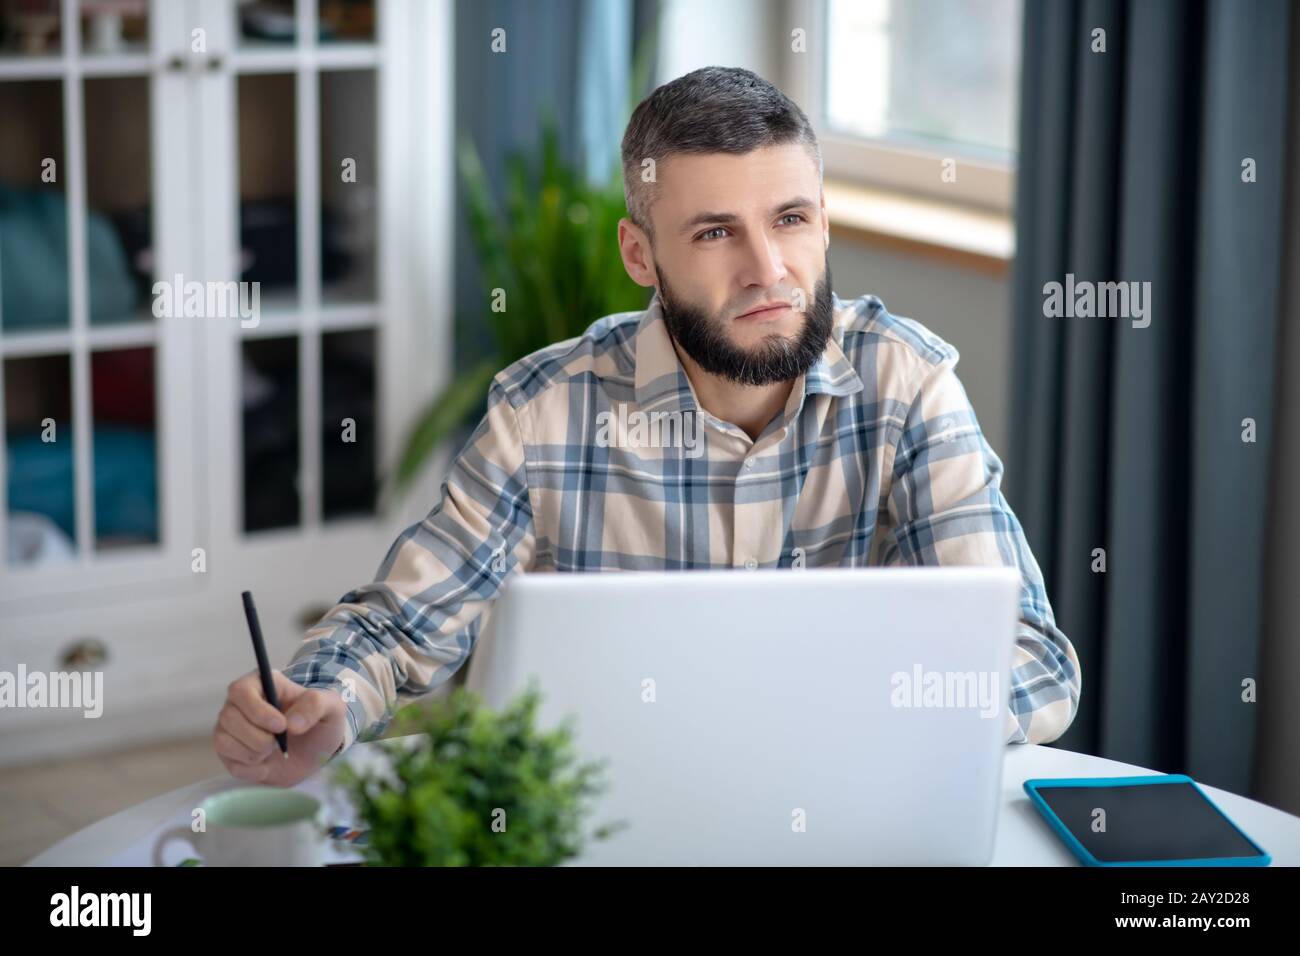 Jeune homme aux cheveux sombres qui travaille derrière un ordinateur portable blanc. Banque D'Images